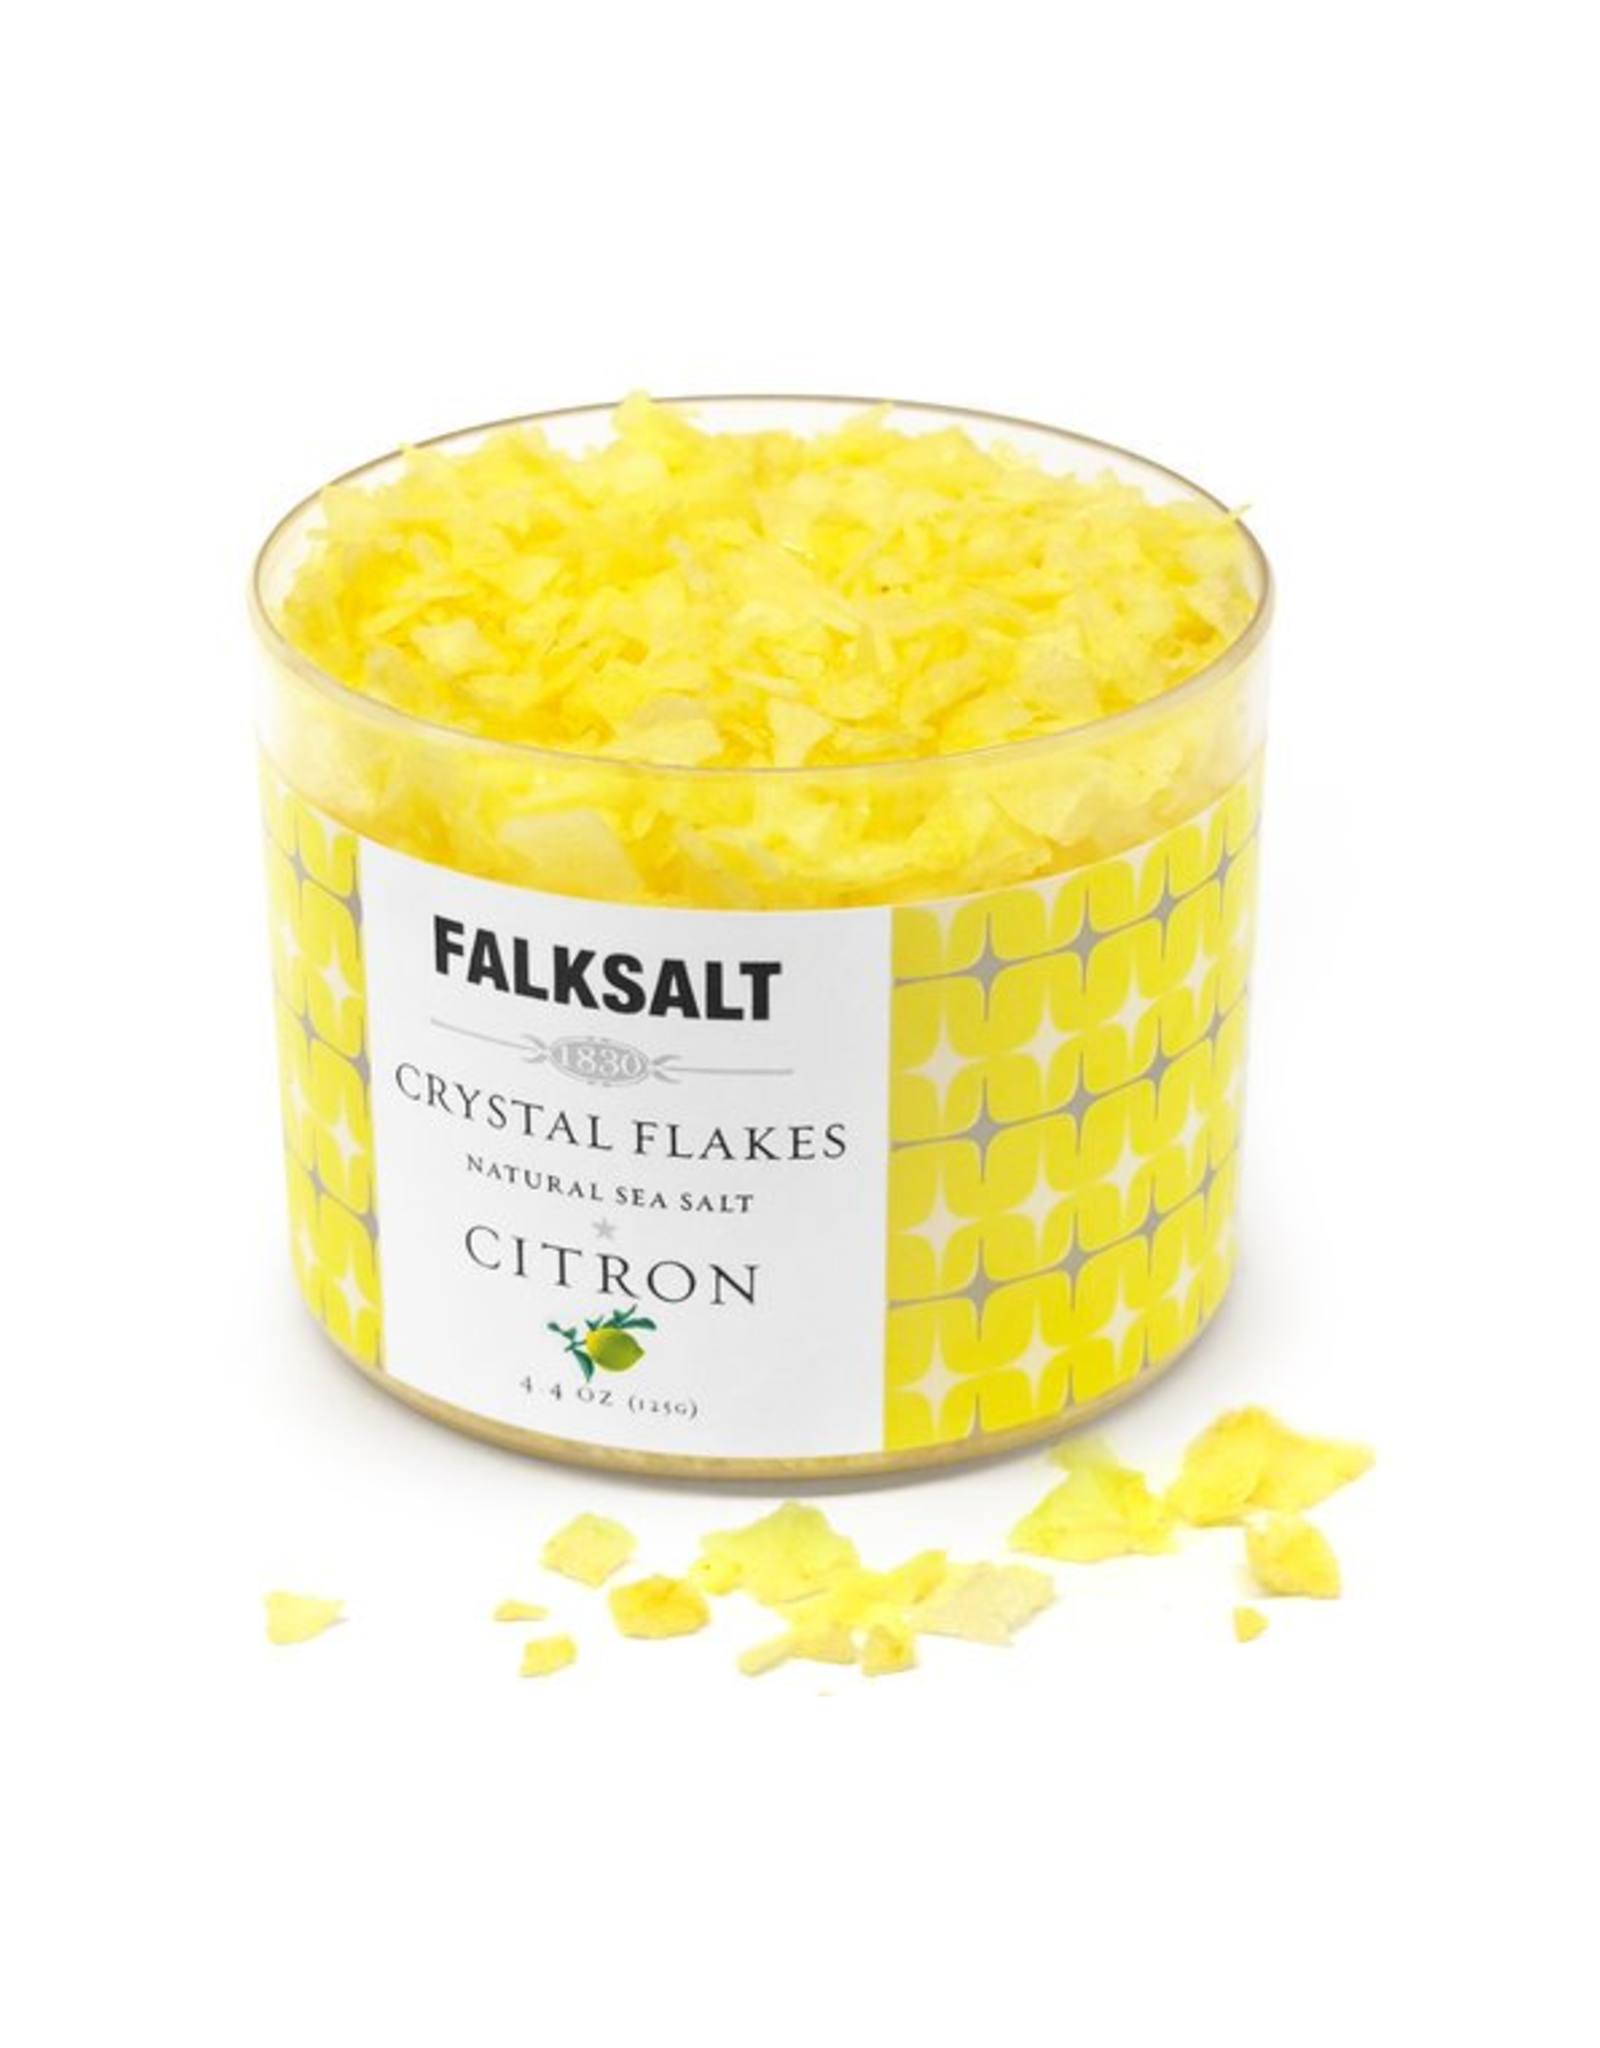 Falksalt Falksalt Crystal Flakes, Citron